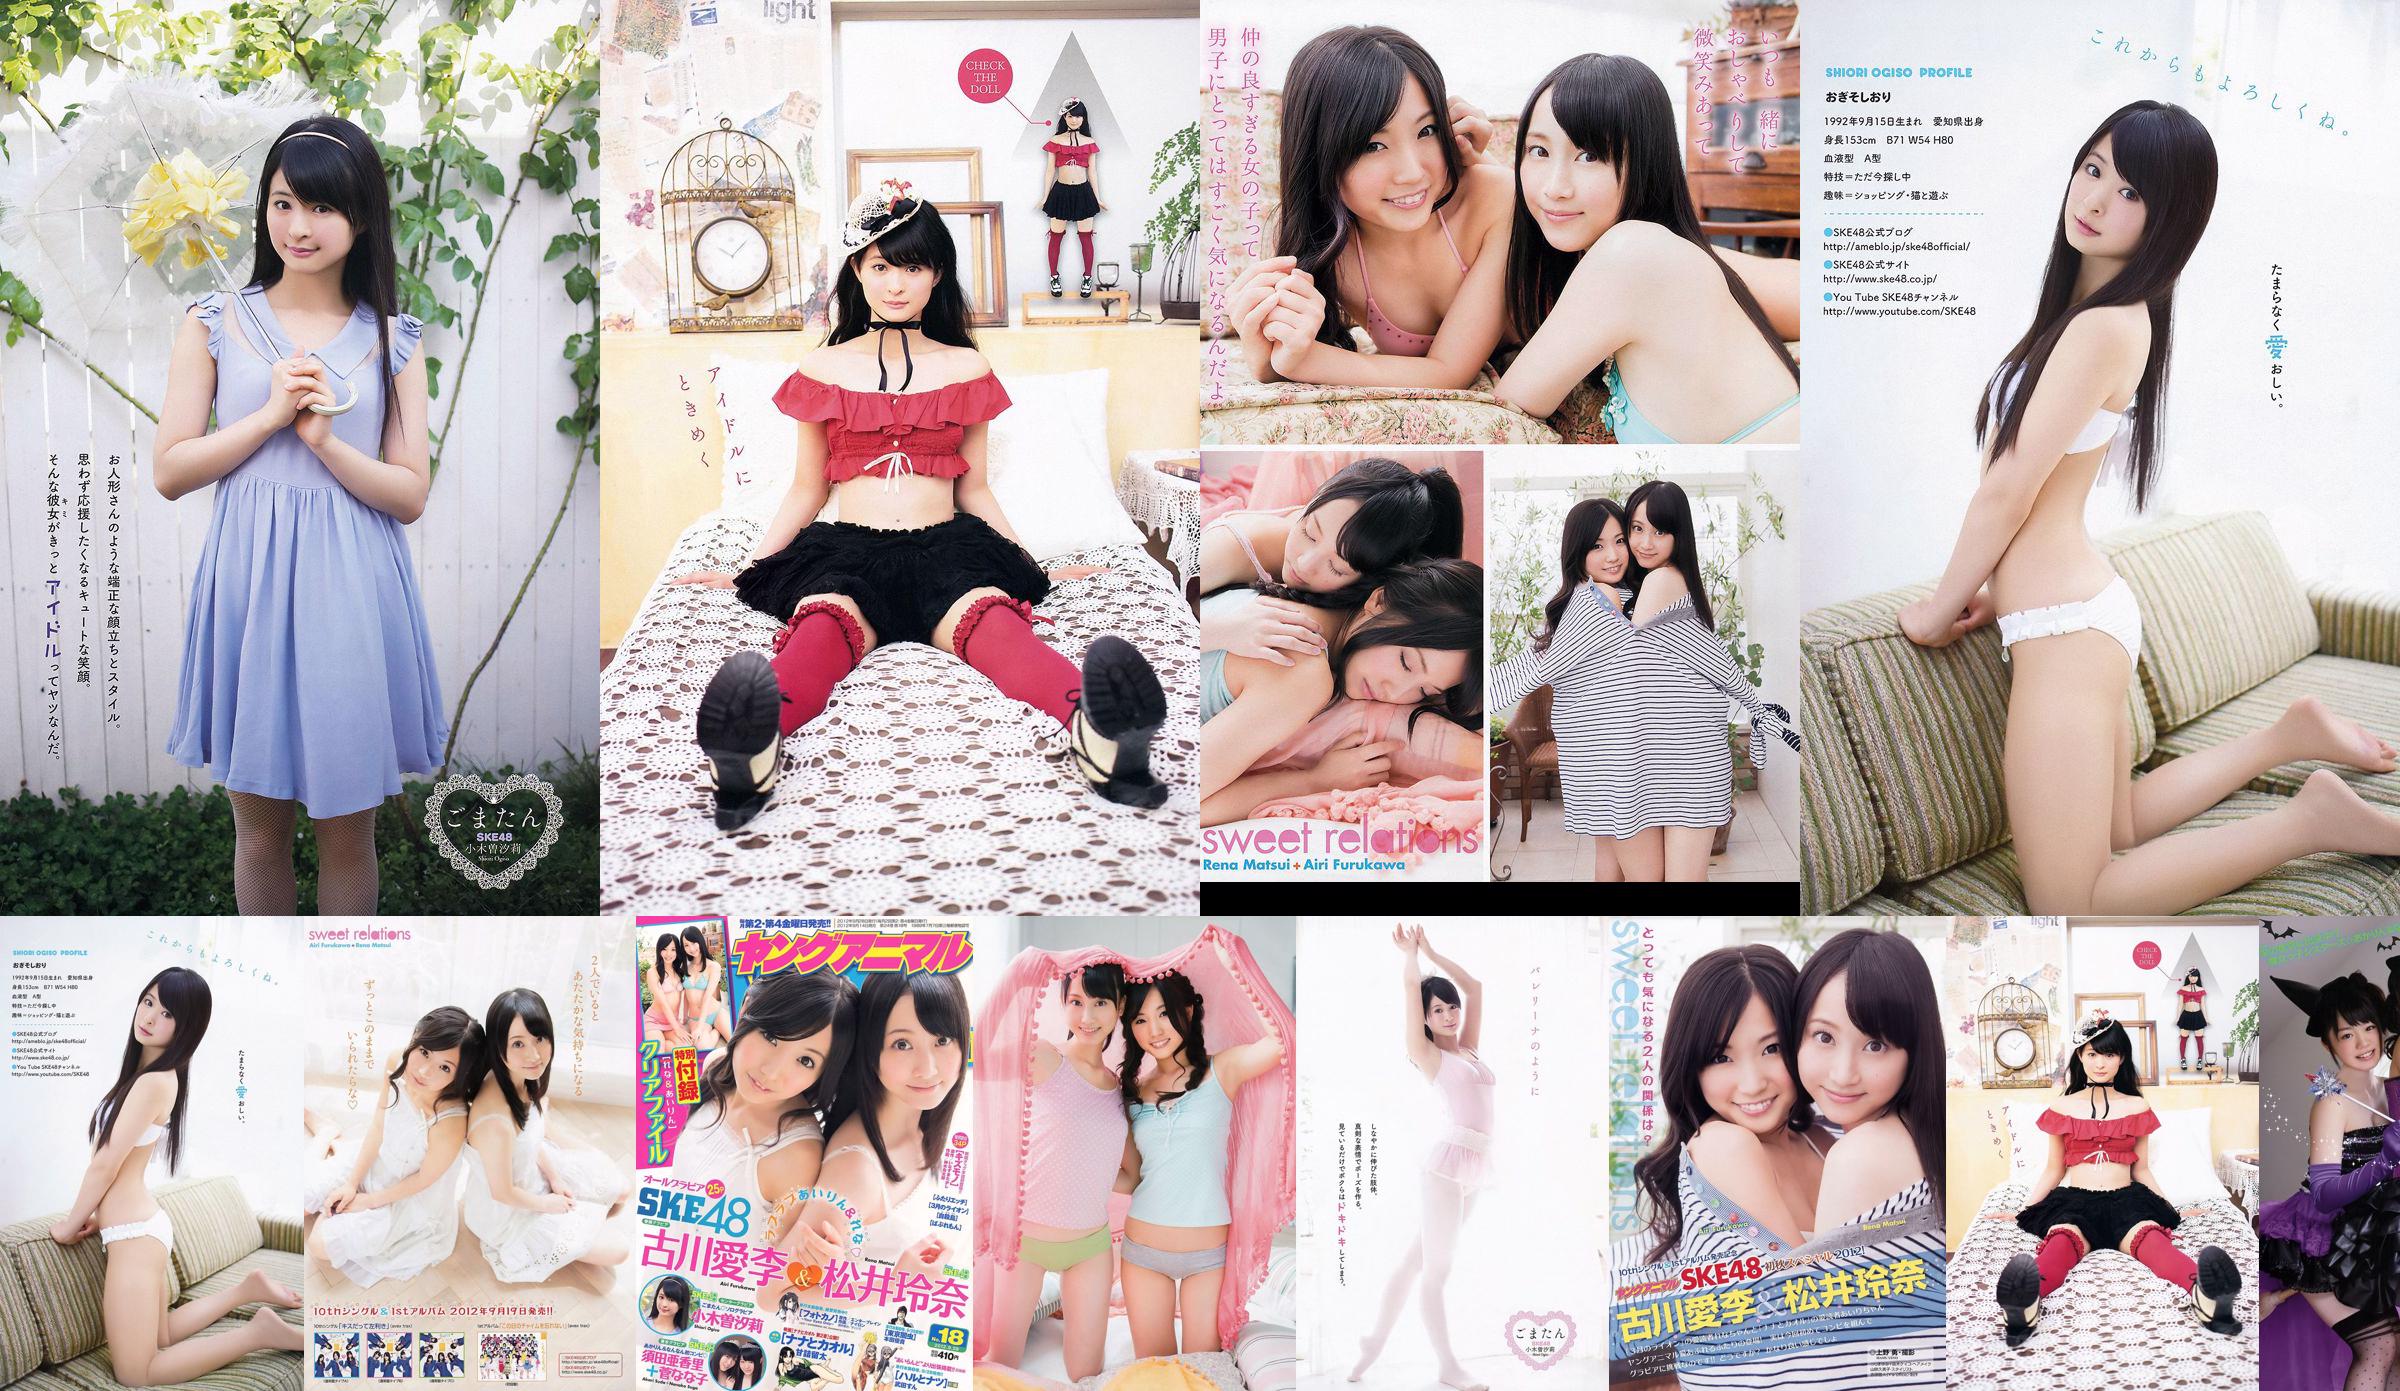 Ai Li Furukawa, Rena Matsui, Sasa Ogi, Aikari Suda [Young Animal] Tạp chí ảnh số 18 năm 2012 No.674818 Trang 7